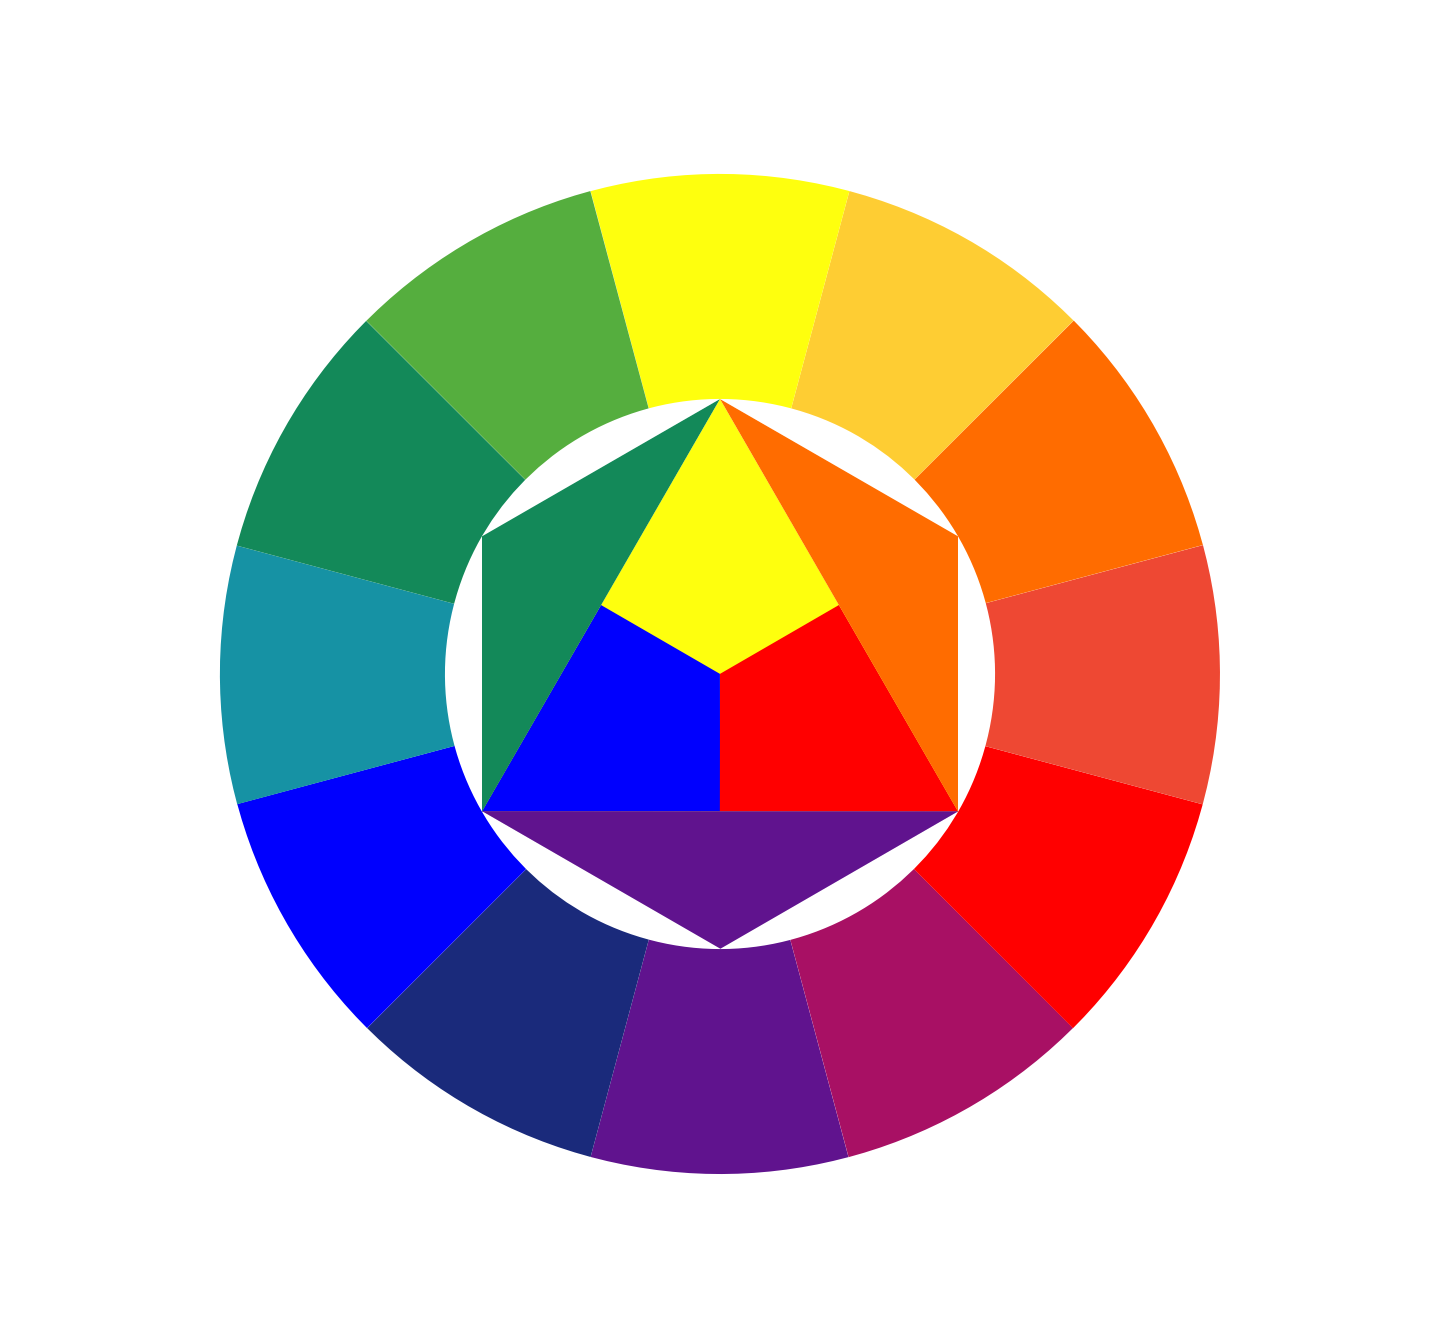 Круг иттена это. Круг Иоханнеса Иттена. Цветовой спектр Иттена. Иоганнес Иттен цветовой круг. Цветовой круг Иттена контрасты.